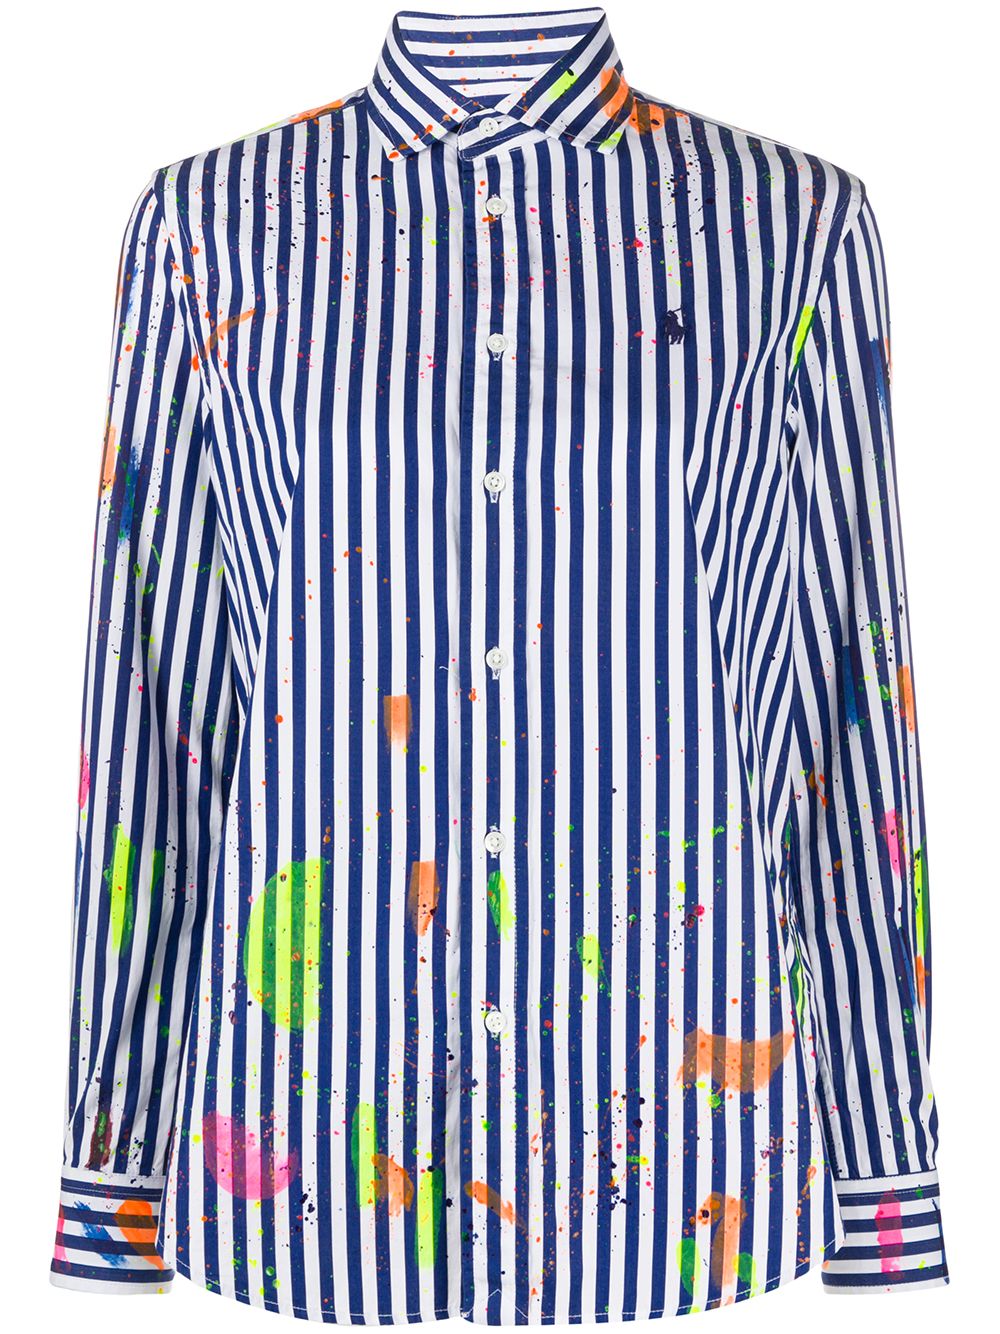 фото Polo ralph lauren рубашка с эффектом разбрызганной краски